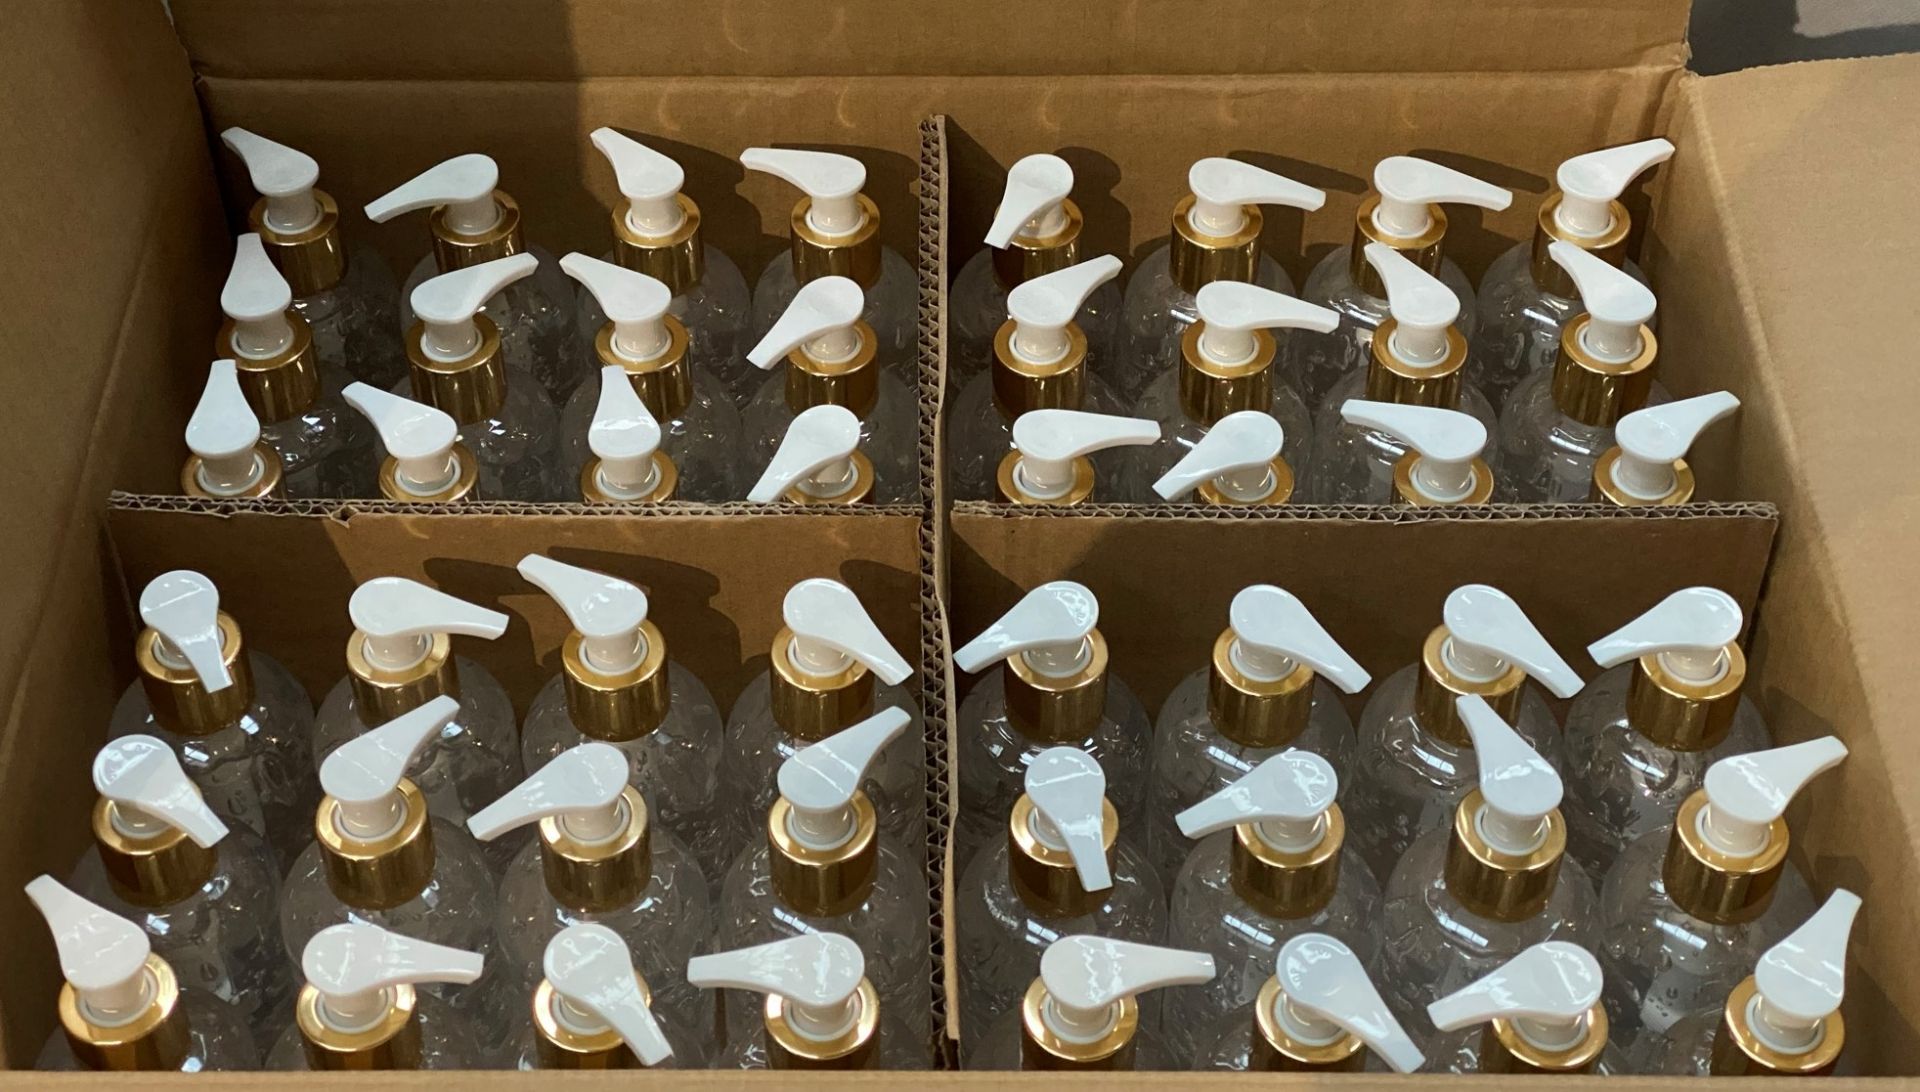 96 x 200ml pump top bottles of Rosdon Group UK hand sanitiser (Unlabelled clear plastic bottles) - - Image 2 of 3